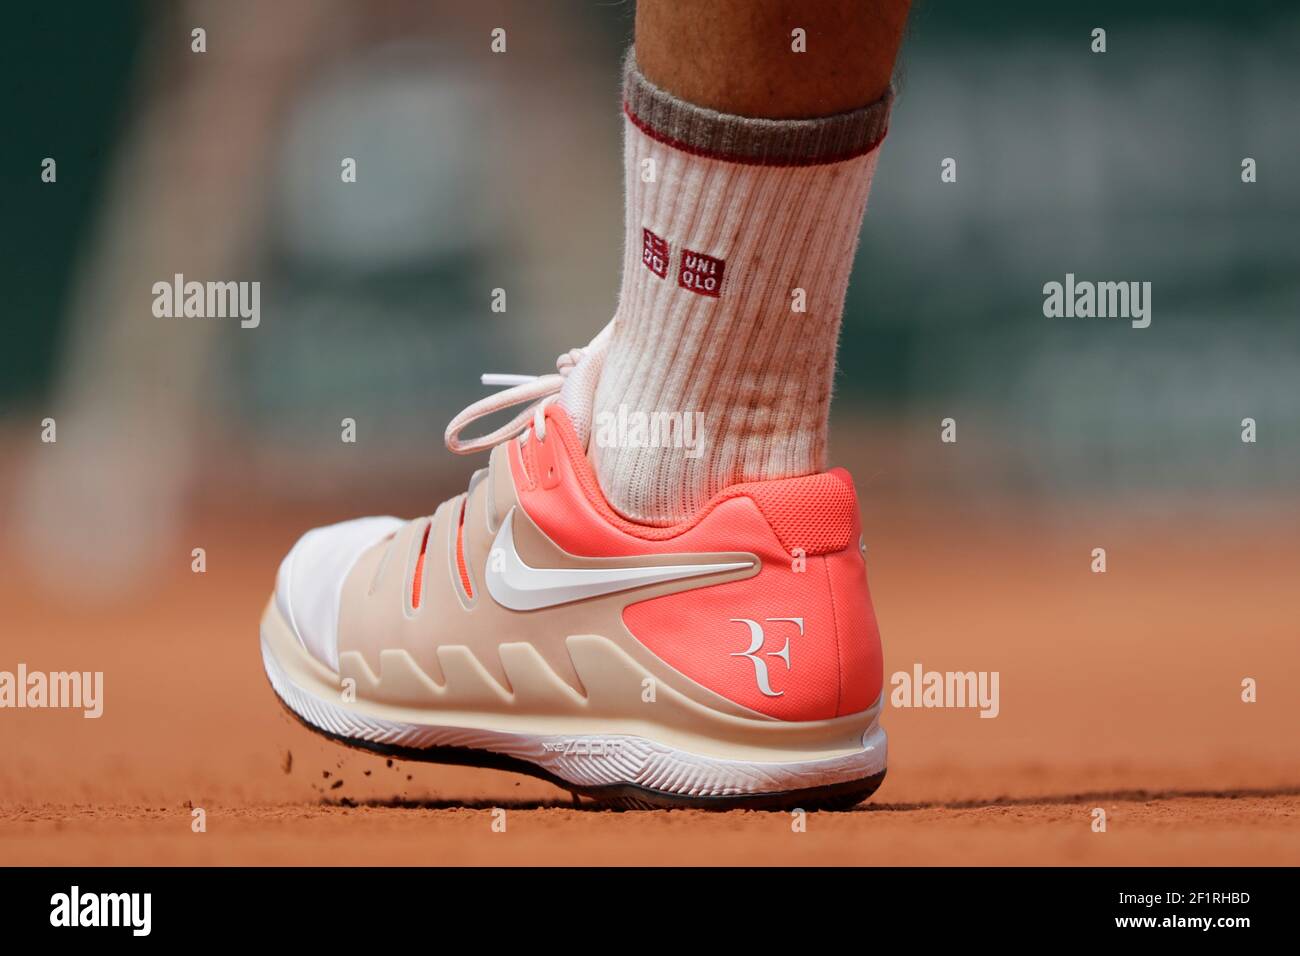 Zapatillas Nike Roger FEDERER (sui) con Torre Eiffel 09 durante el Roland-Garros 2019, Grand Slam Tennis Tournament, sorteo de hombres el 4 de junio de 2019 en el estadio Roland-Garros